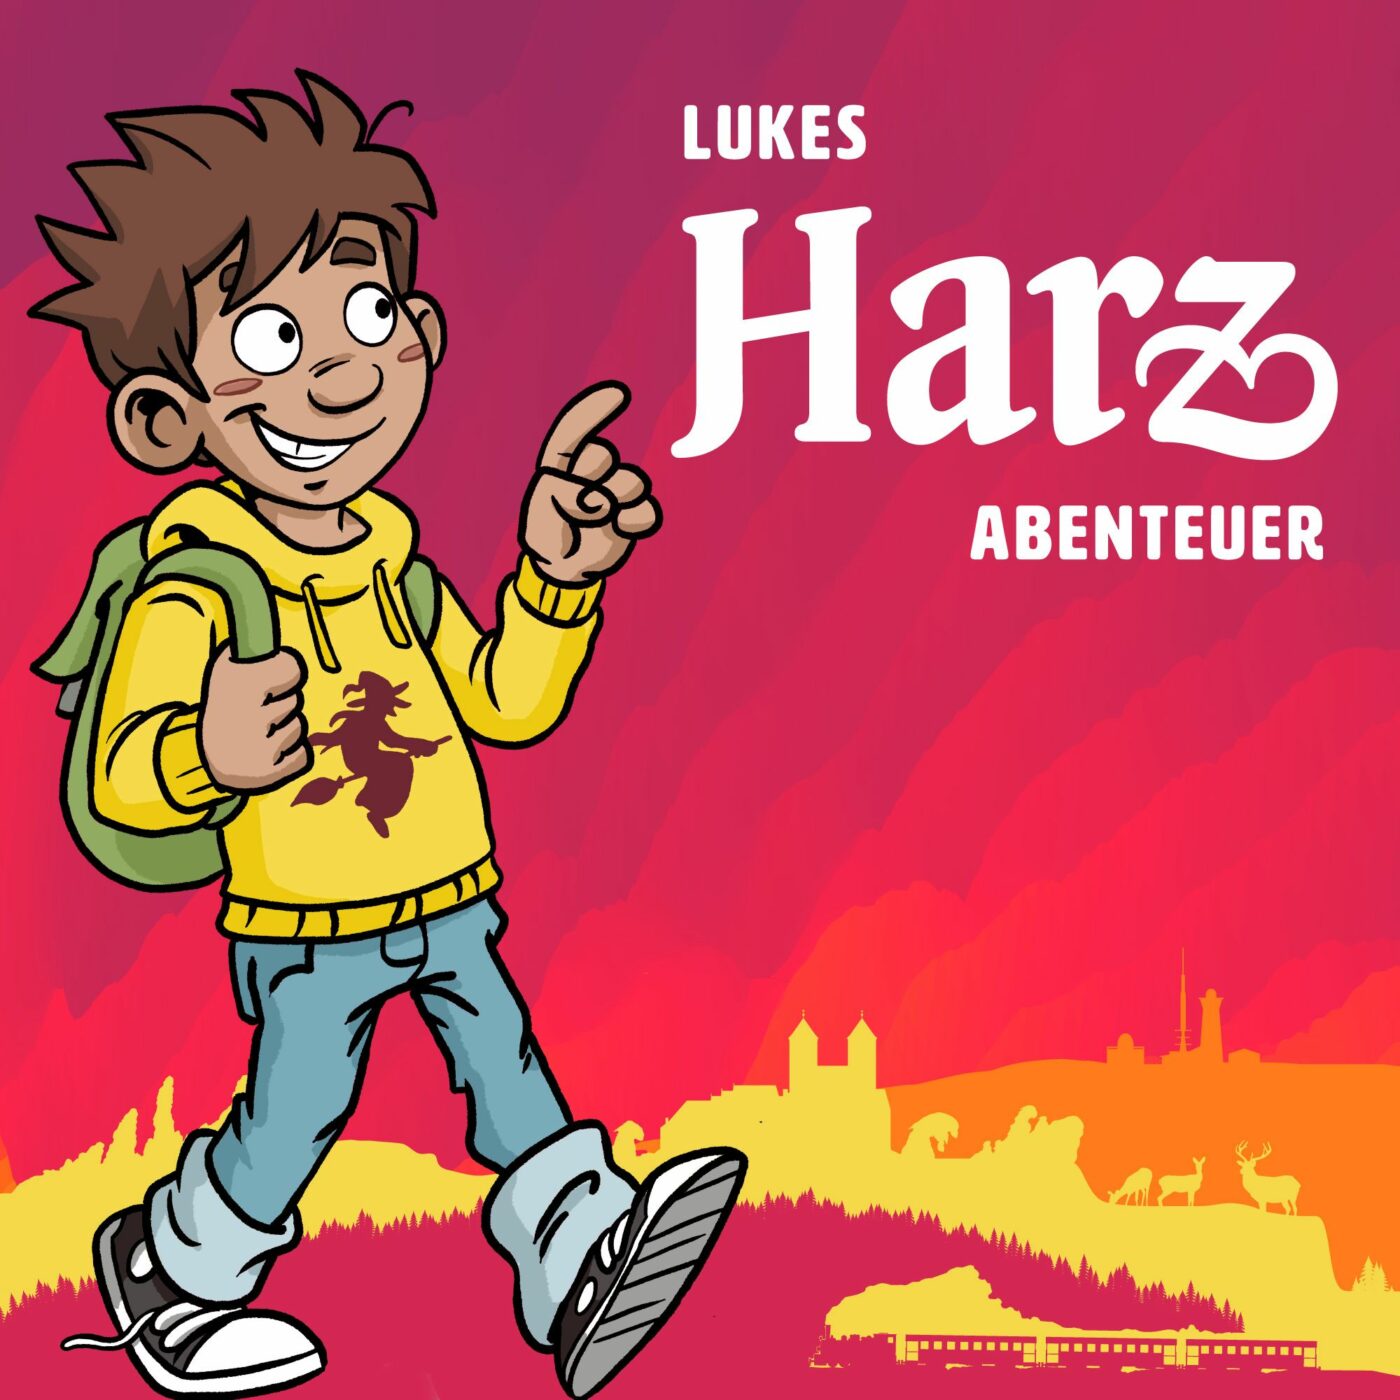 Lukes Harz Abenteuer sollen kleine Besucher begeistern